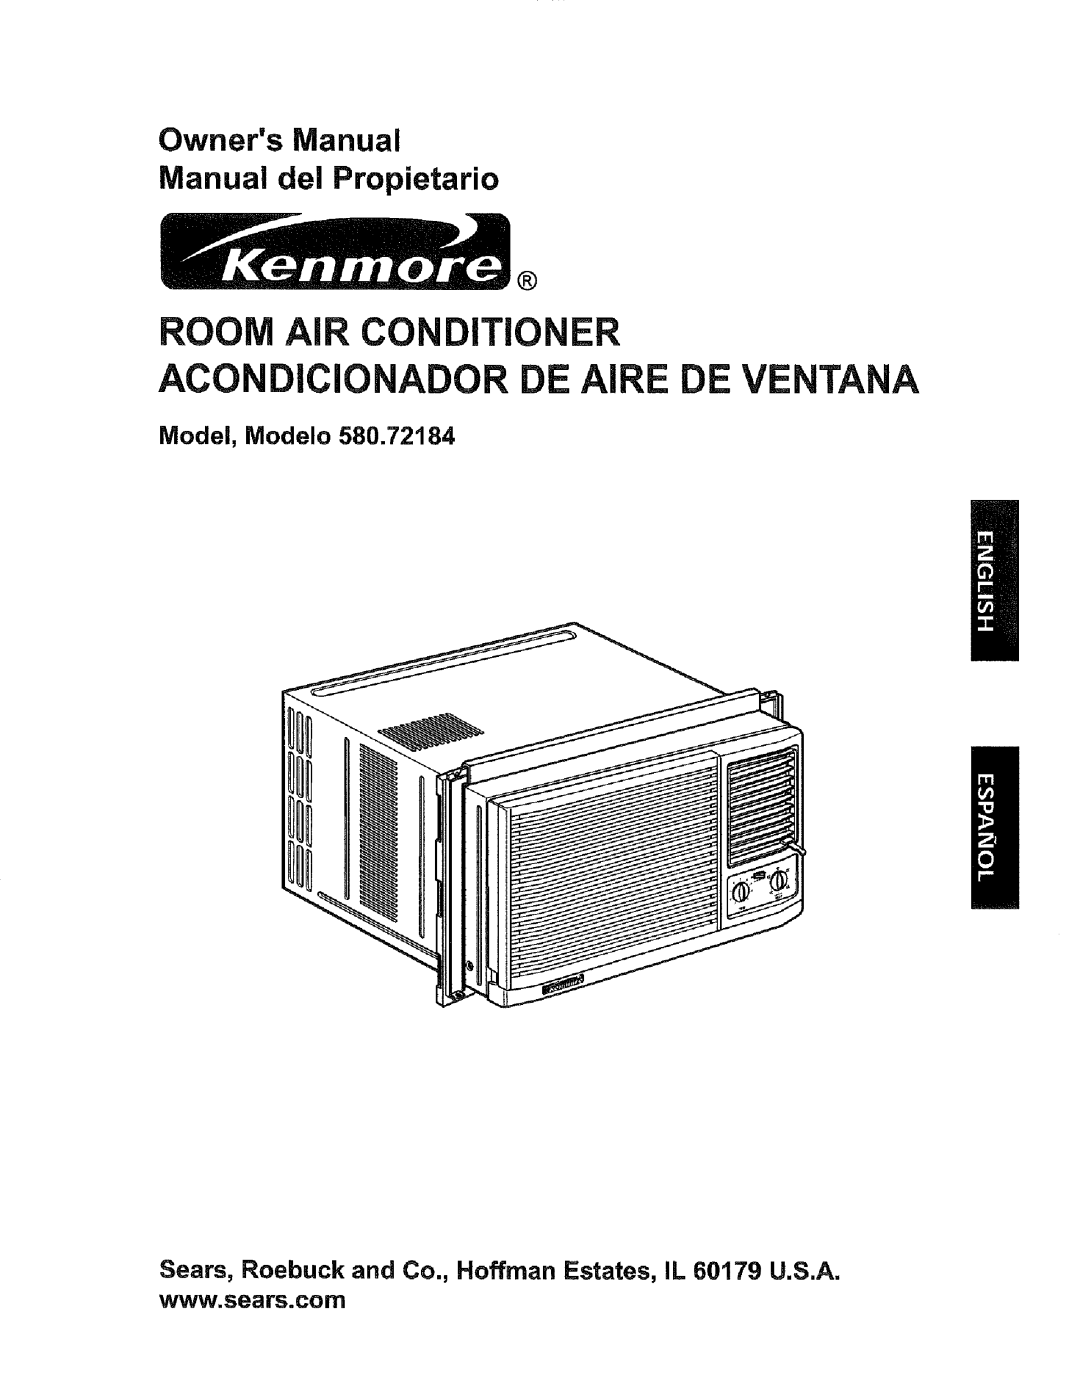 Kenmore 580.72184 owner manual Model, Modelo, Acondicionador De Aire De Ventana, ROOM AiR CONDITIONER 